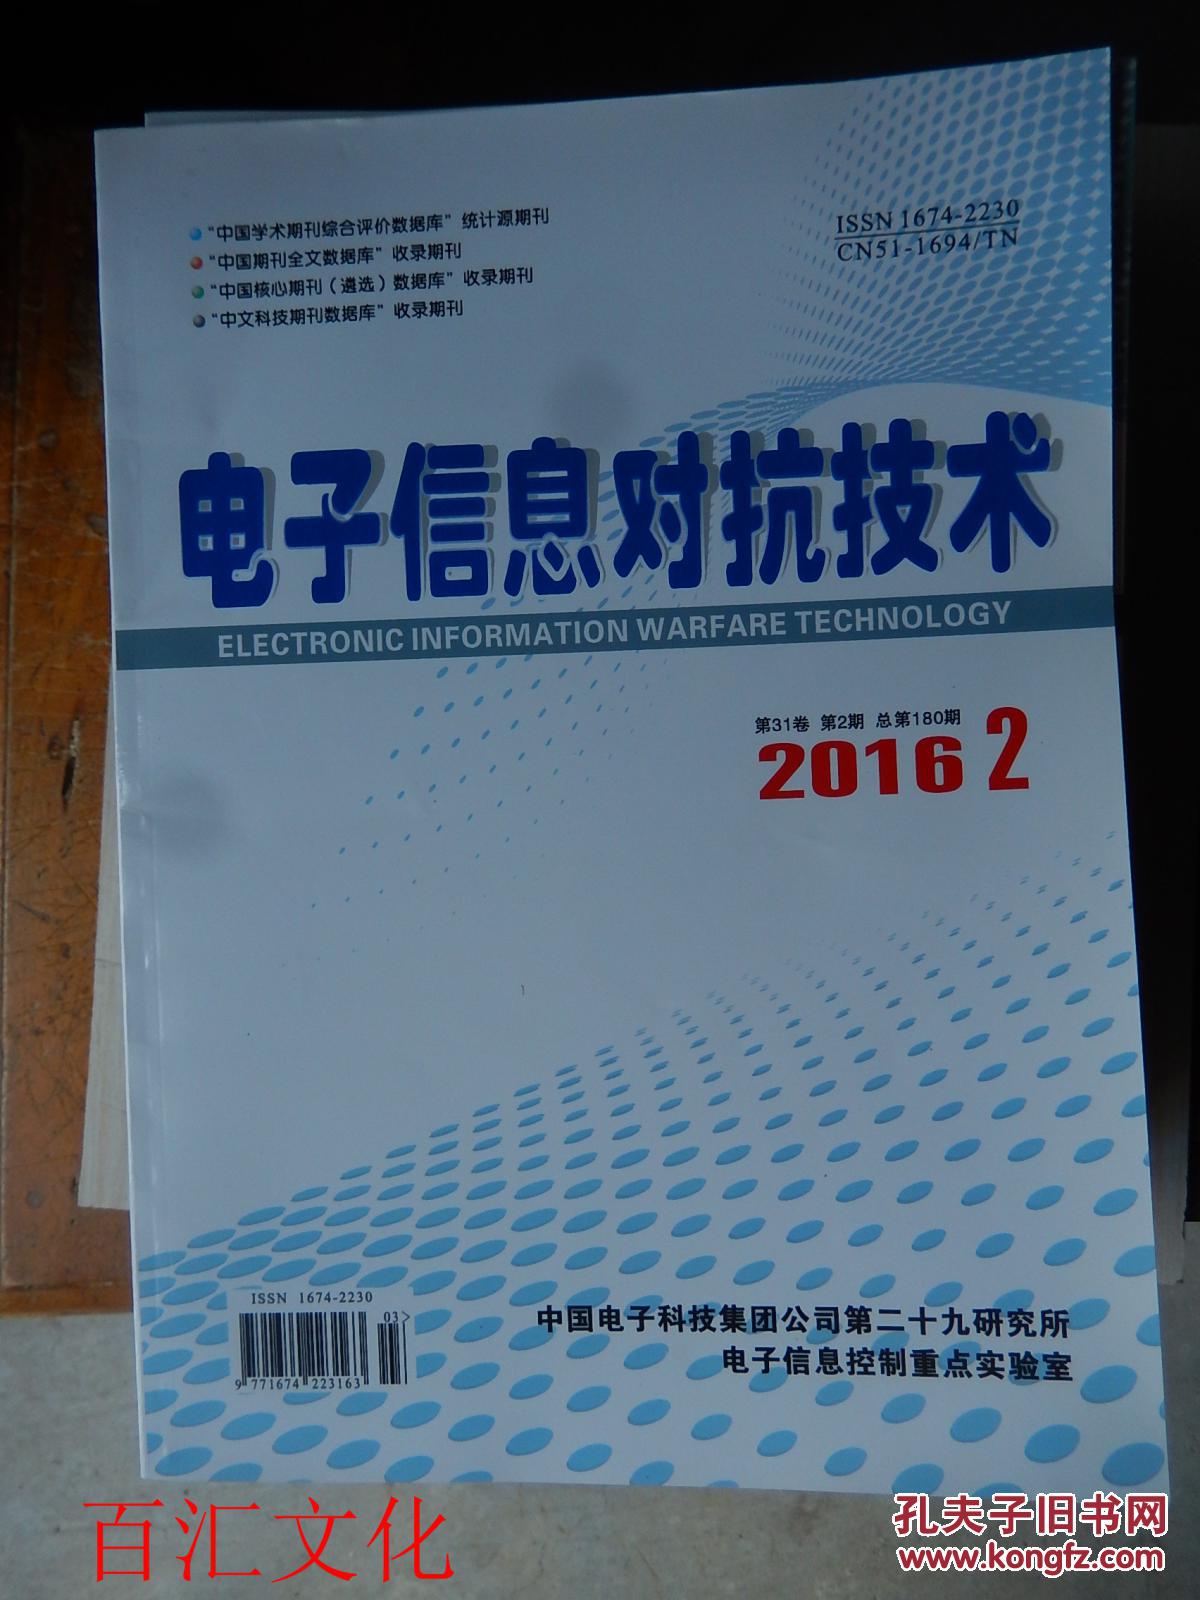 【图】电子信息对抗技术 双月刊(2016年 第31